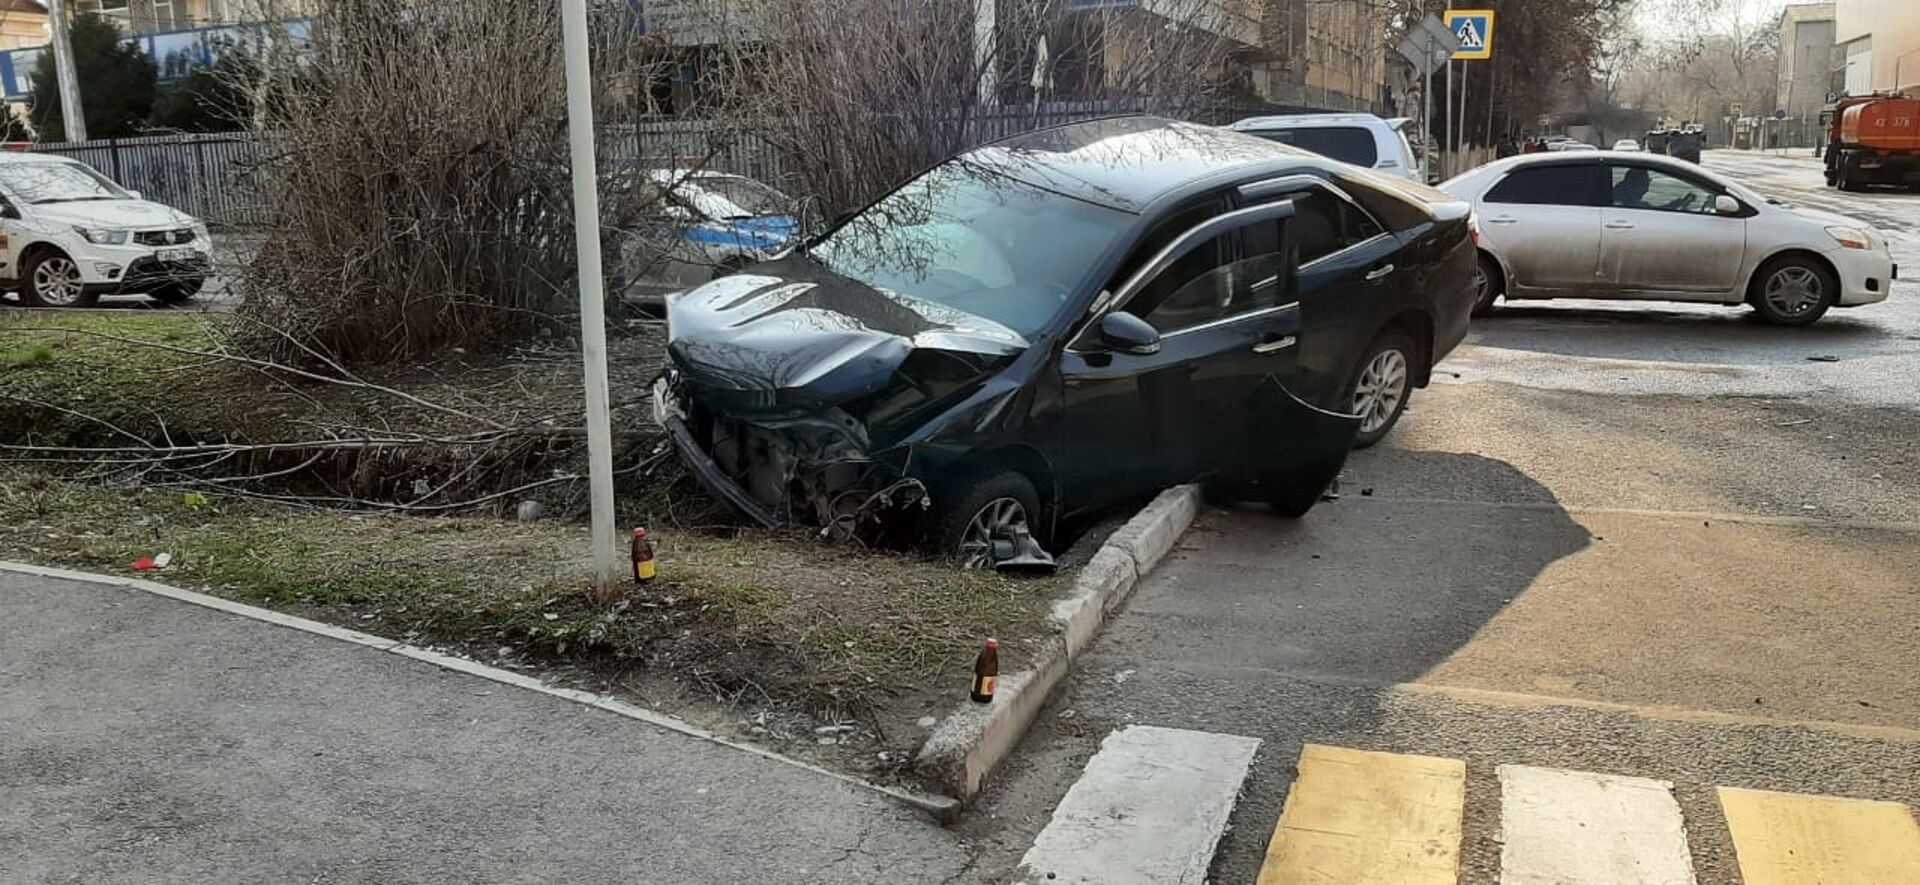 Два автомобиля столкнулись в Алматы, один из них вылетел в арык - фото - Sputnik Казахстан, 1920, 03.04.2021